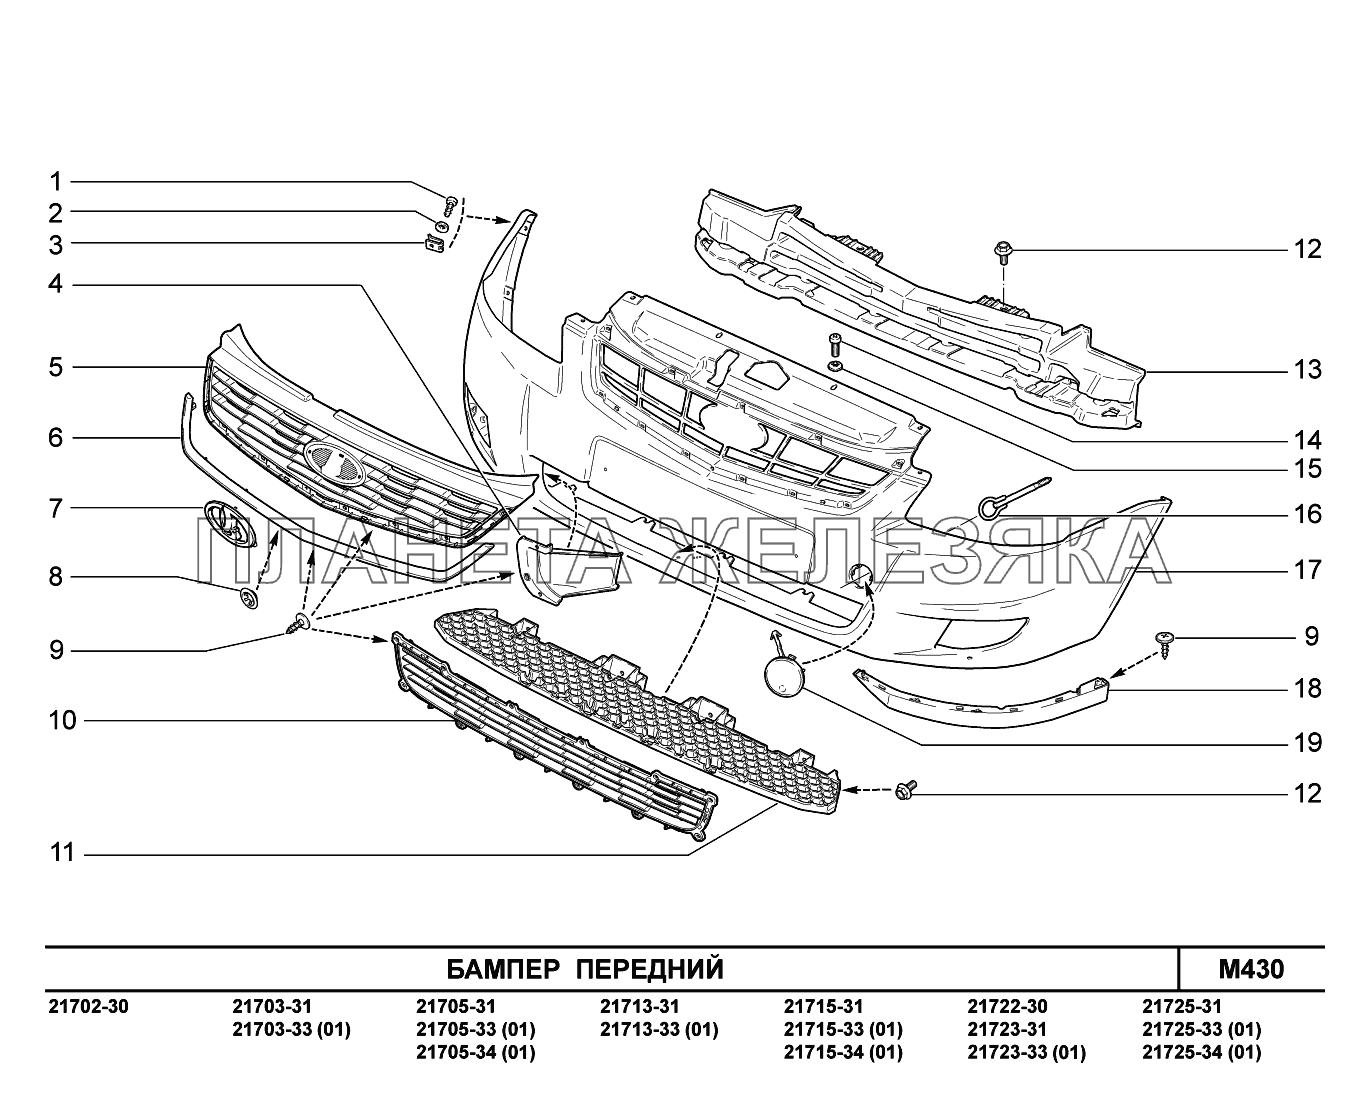 M430. Бампер  передний ВАЗ-2170 